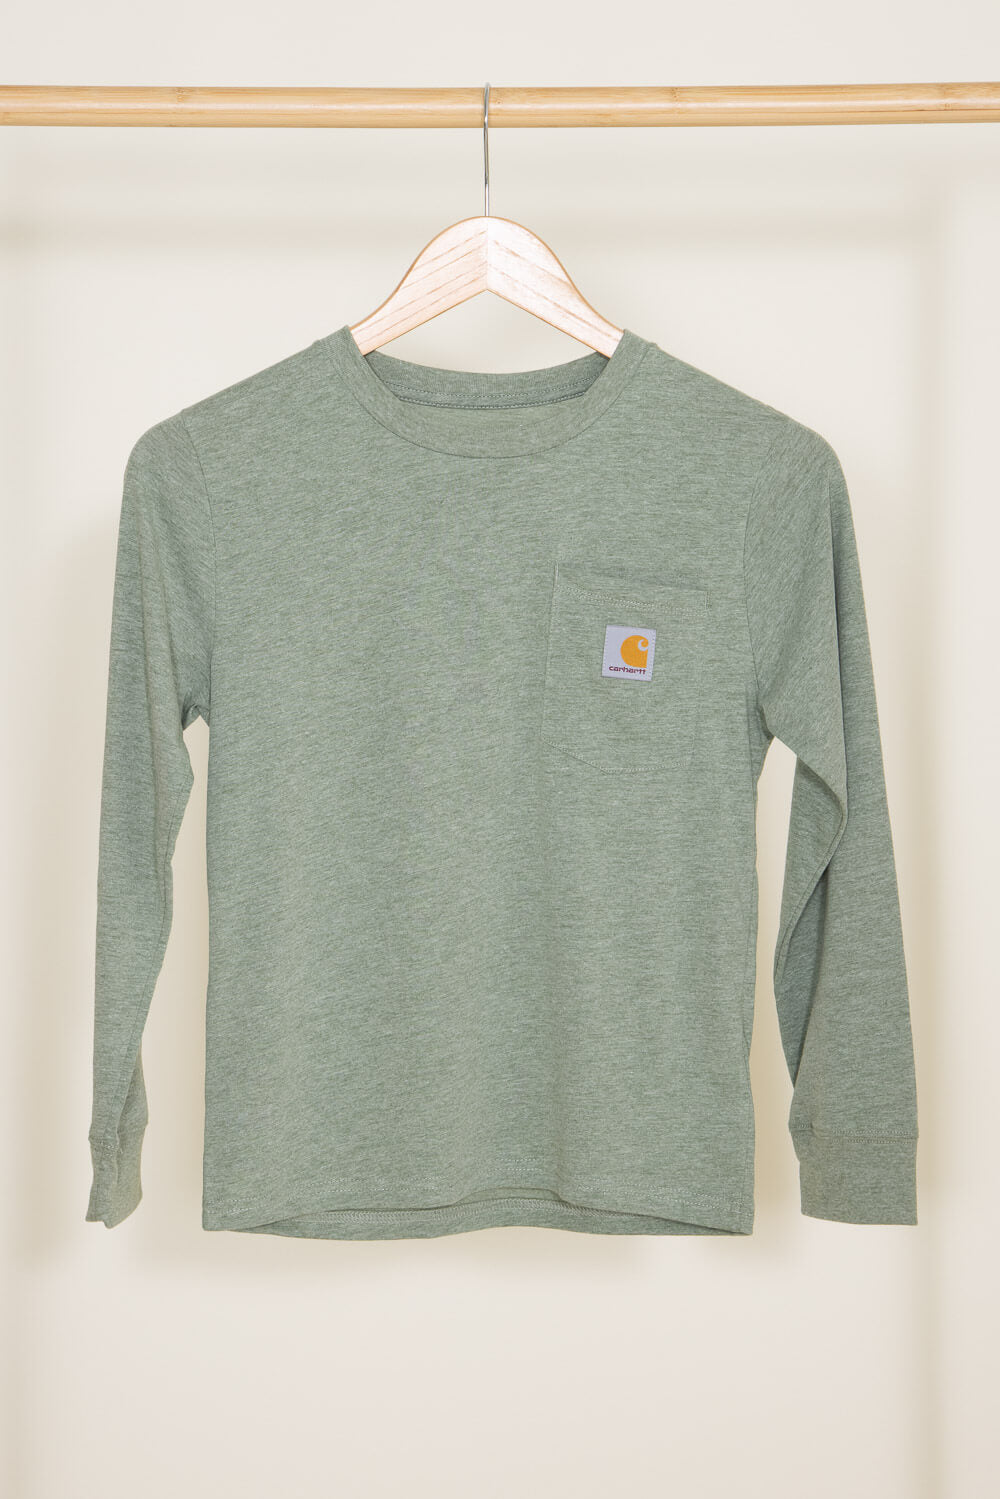 Men's Long Sleeve Shirts  Official Carhartt WIP Online Store – Carhartt  WIP USA